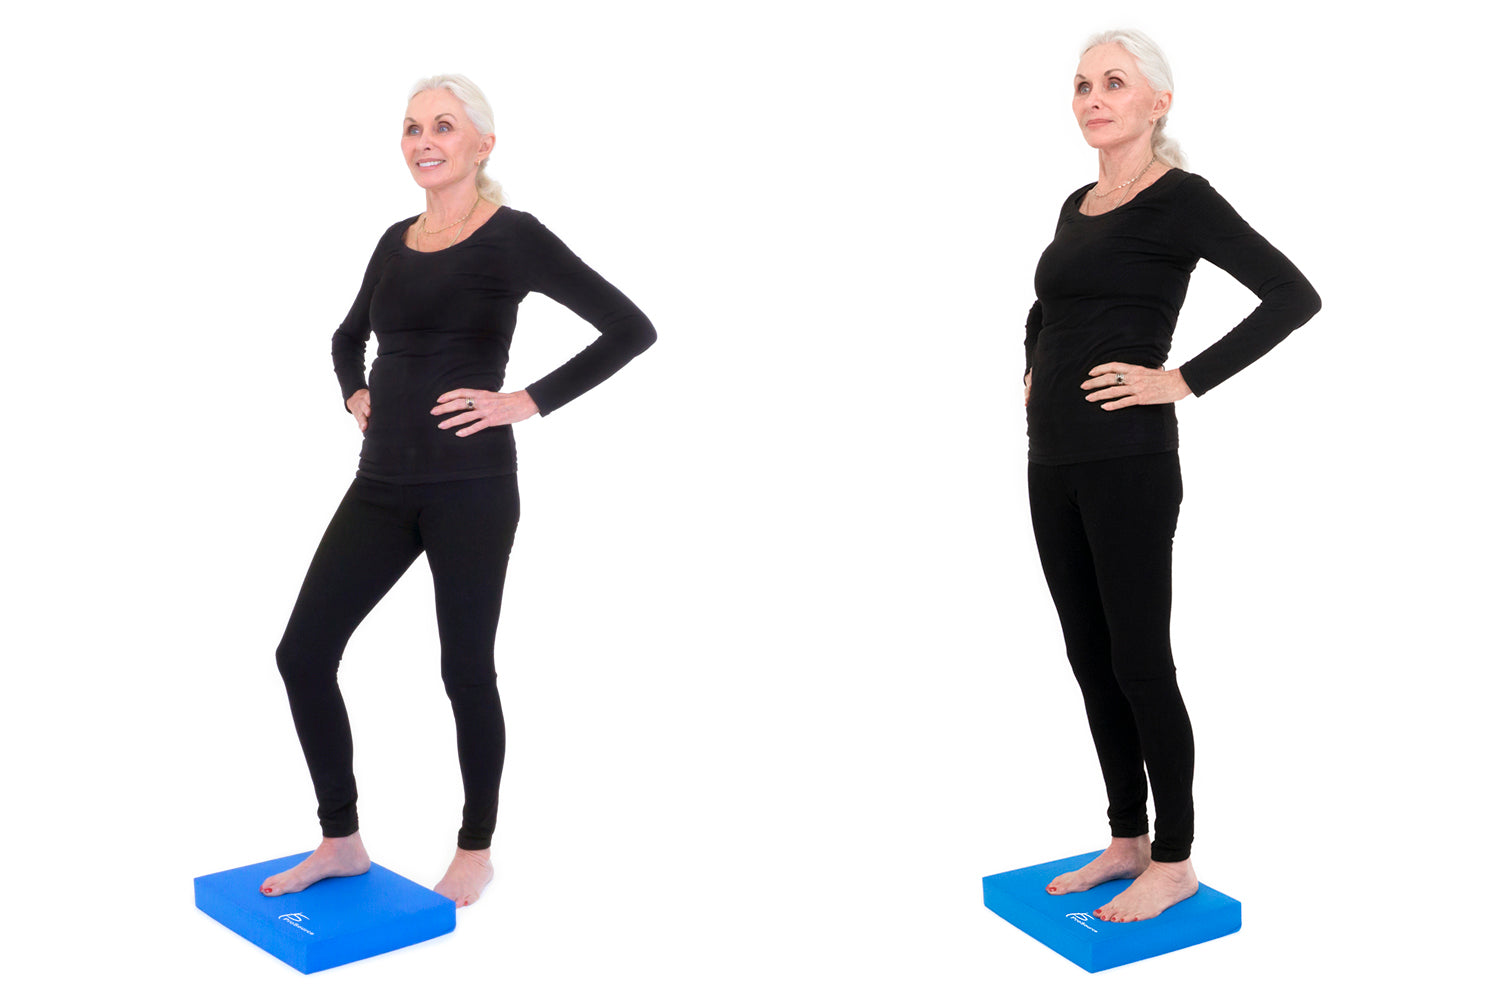 Step up exercise on ProSource balance pad